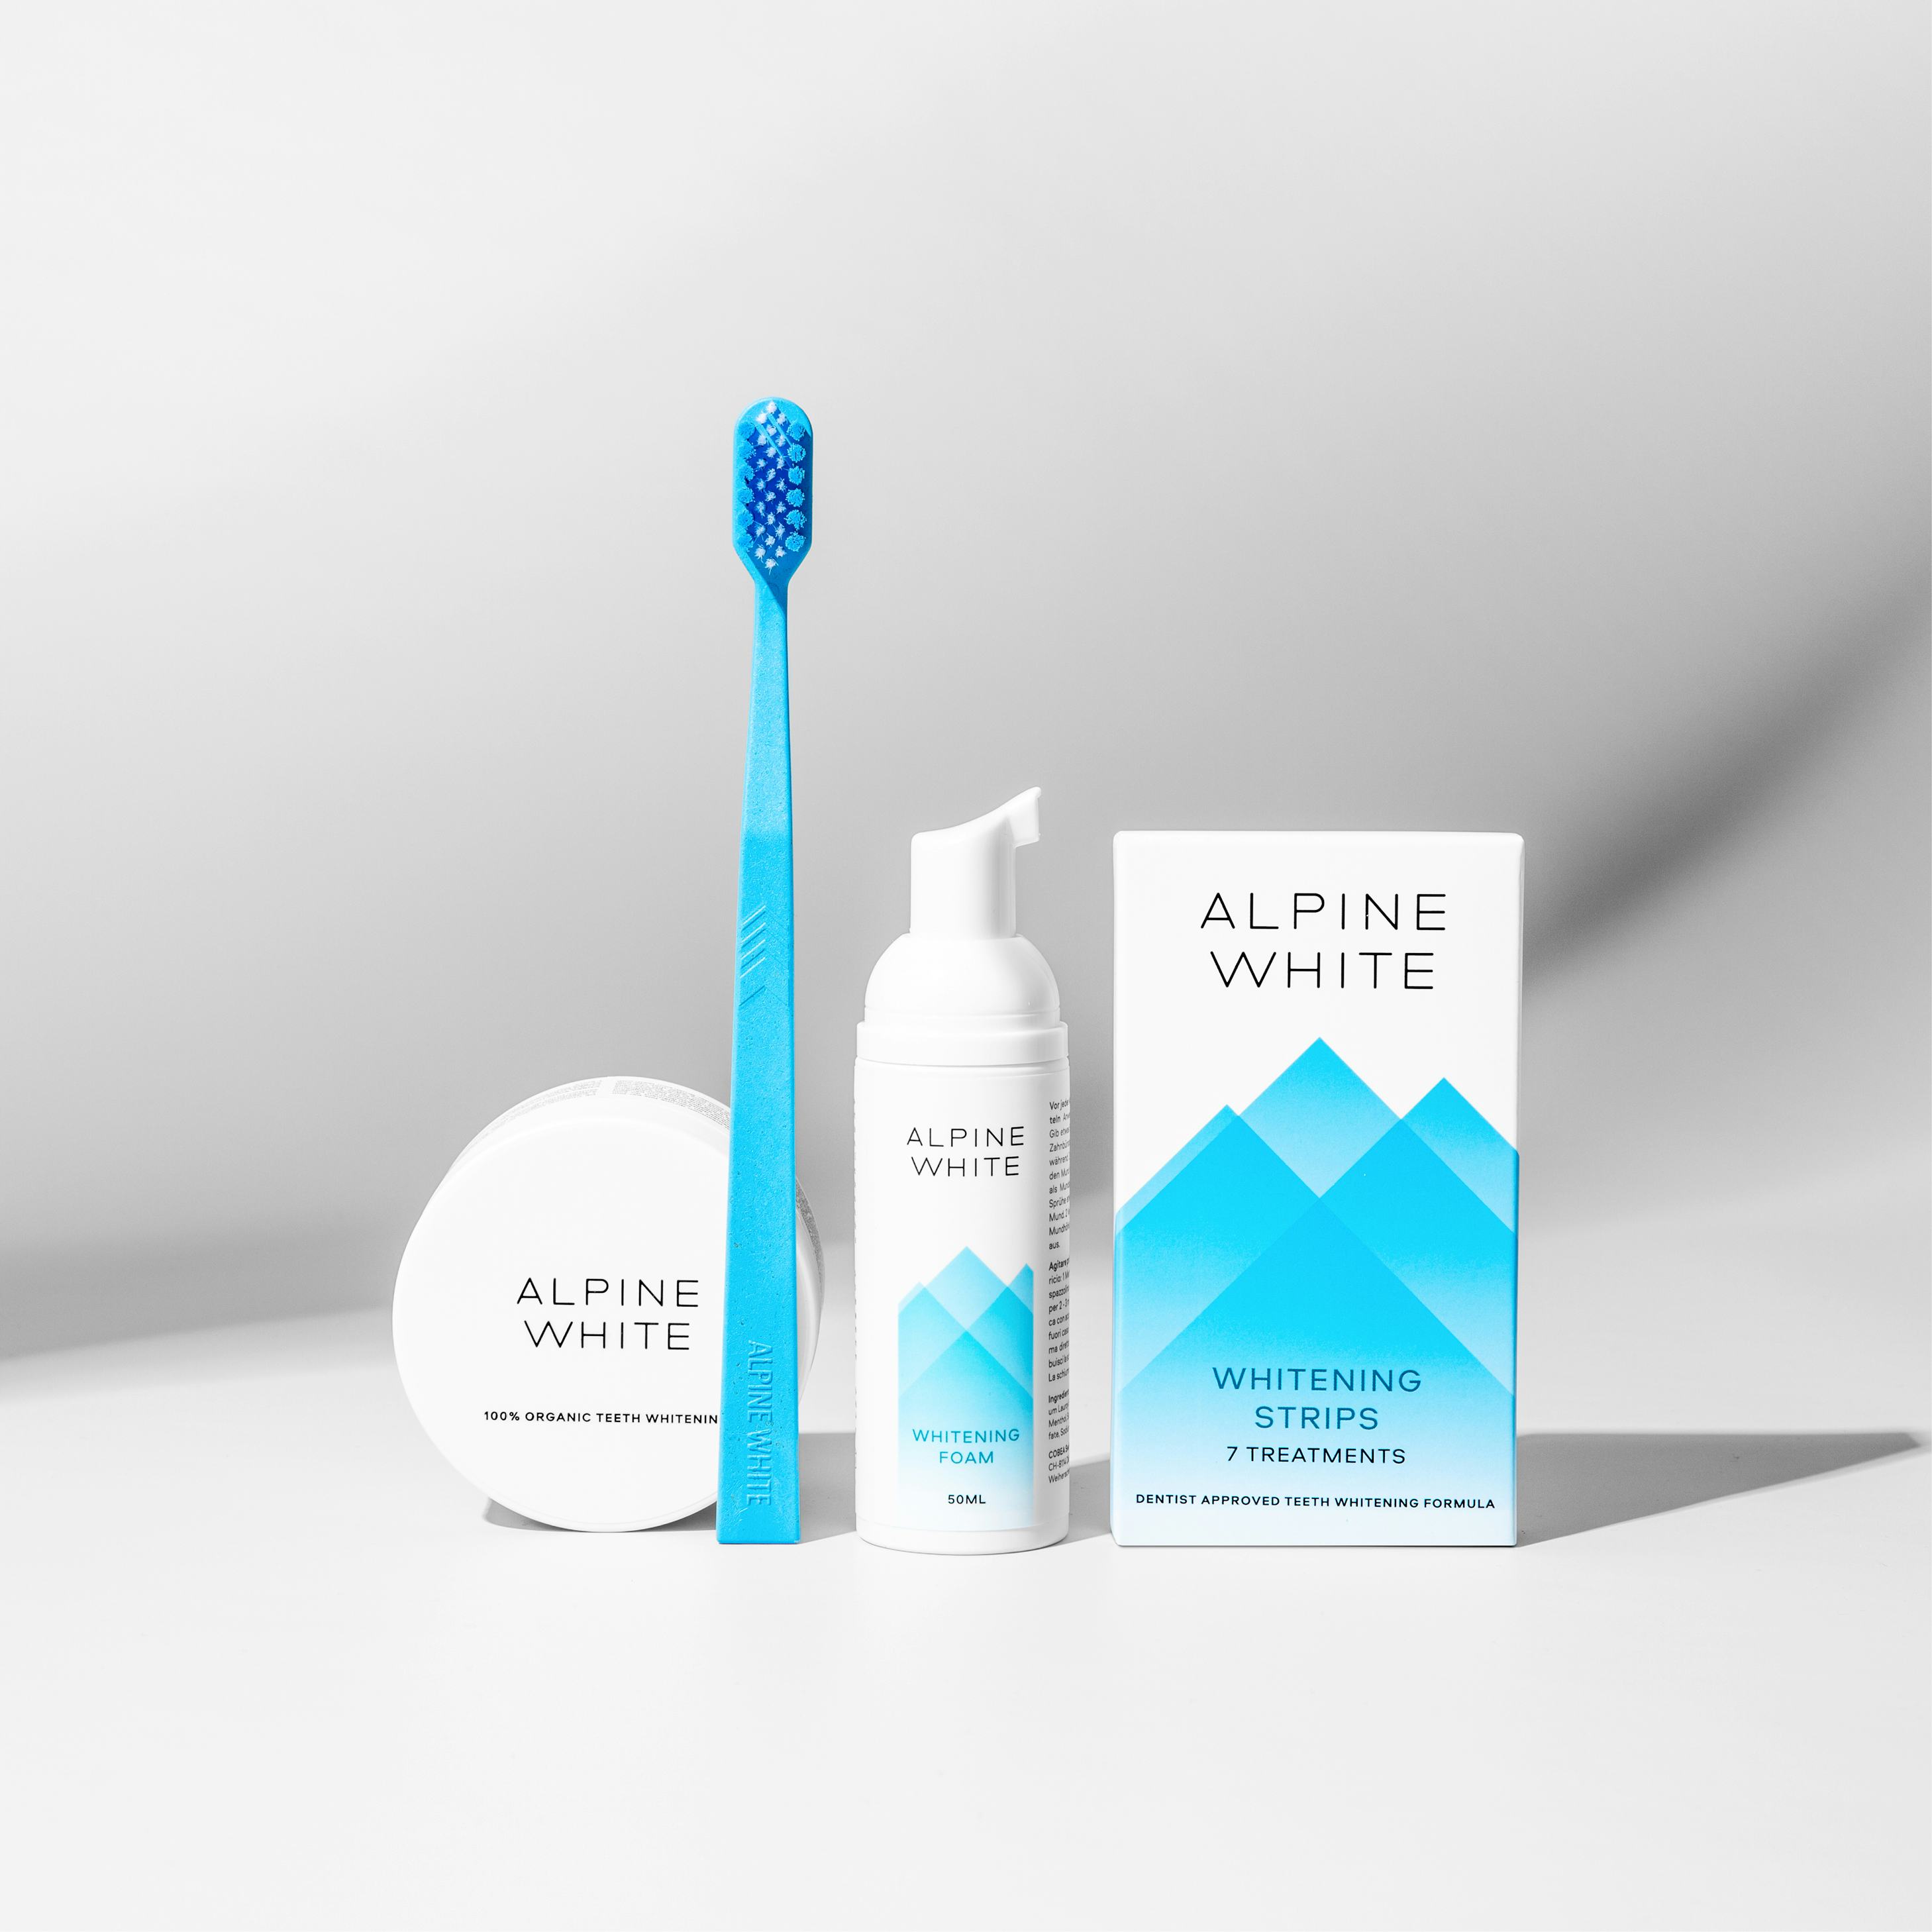 Alpine White Whitening Bundle Product Shot